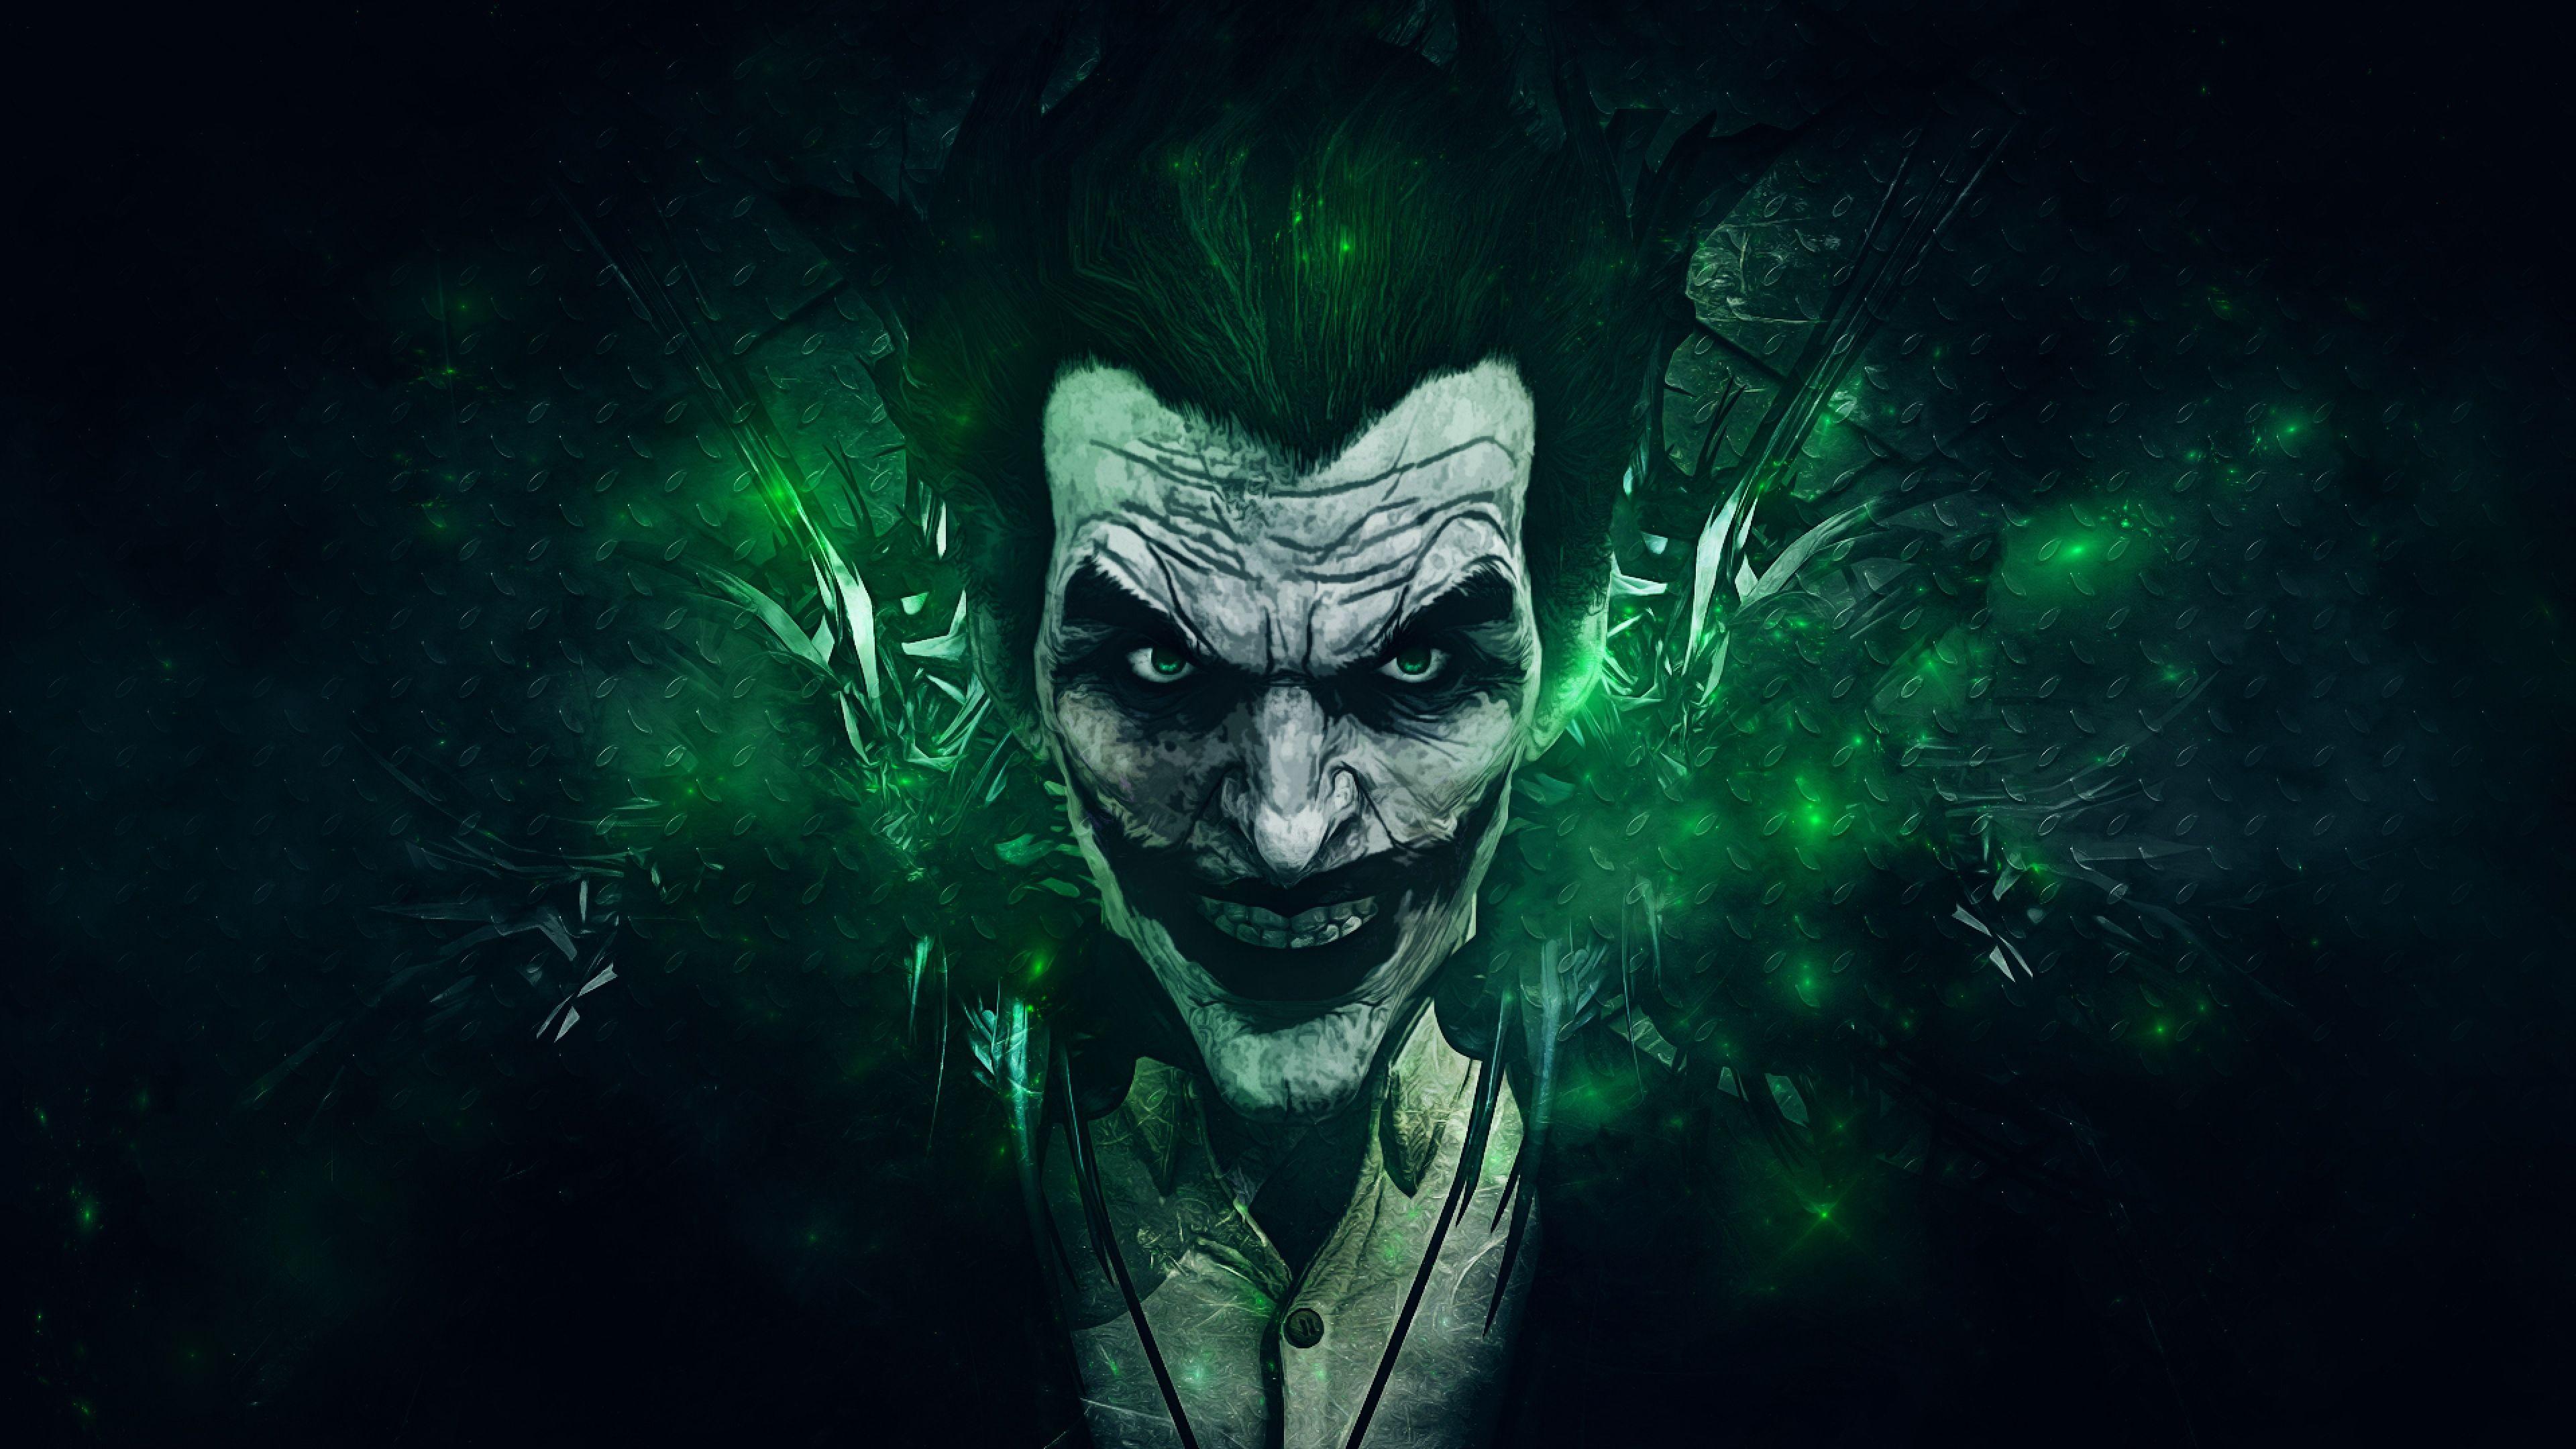 Joker Artwork 4K Ultra HD Mobile Wallpaper